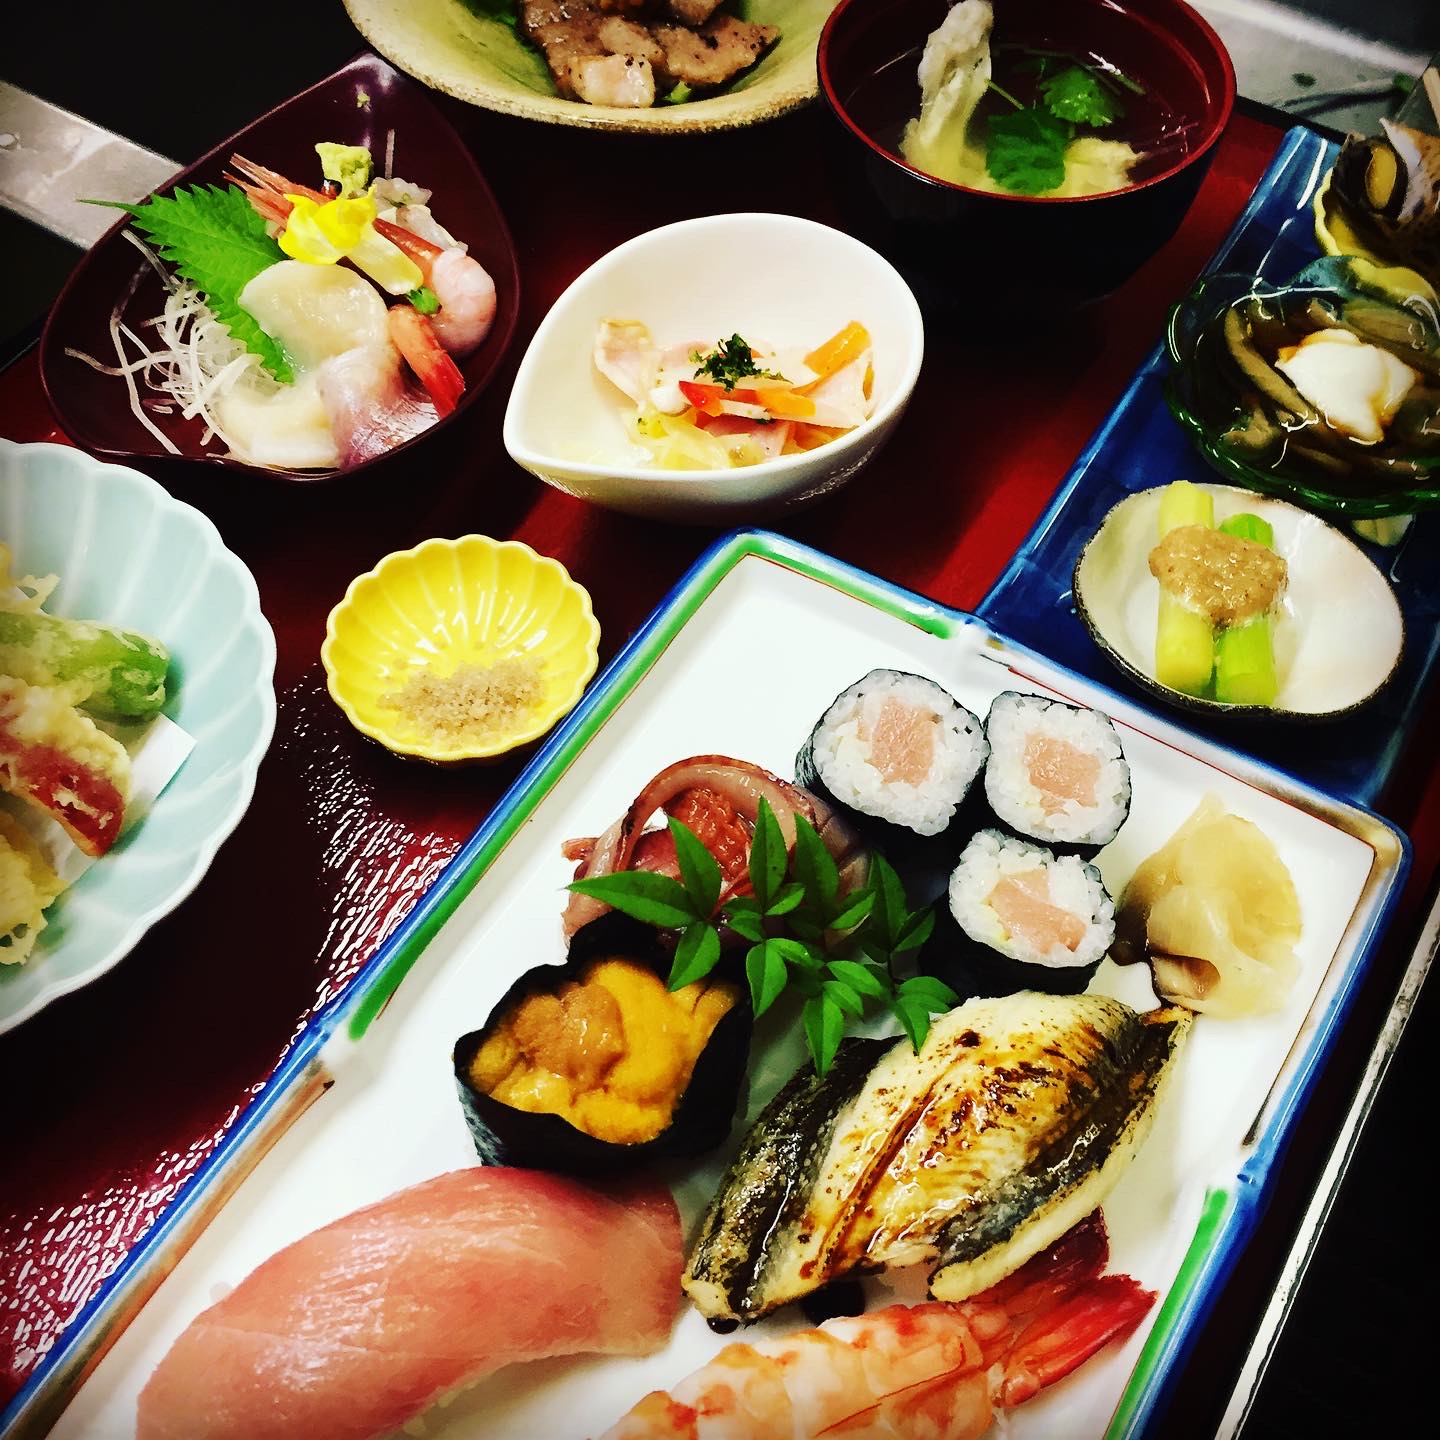 がたろう御膳(ランチ)
特上寿司の他、焼き物や肉料理、副菜にお椀物といろんな料理が楽しめるお得なランチ